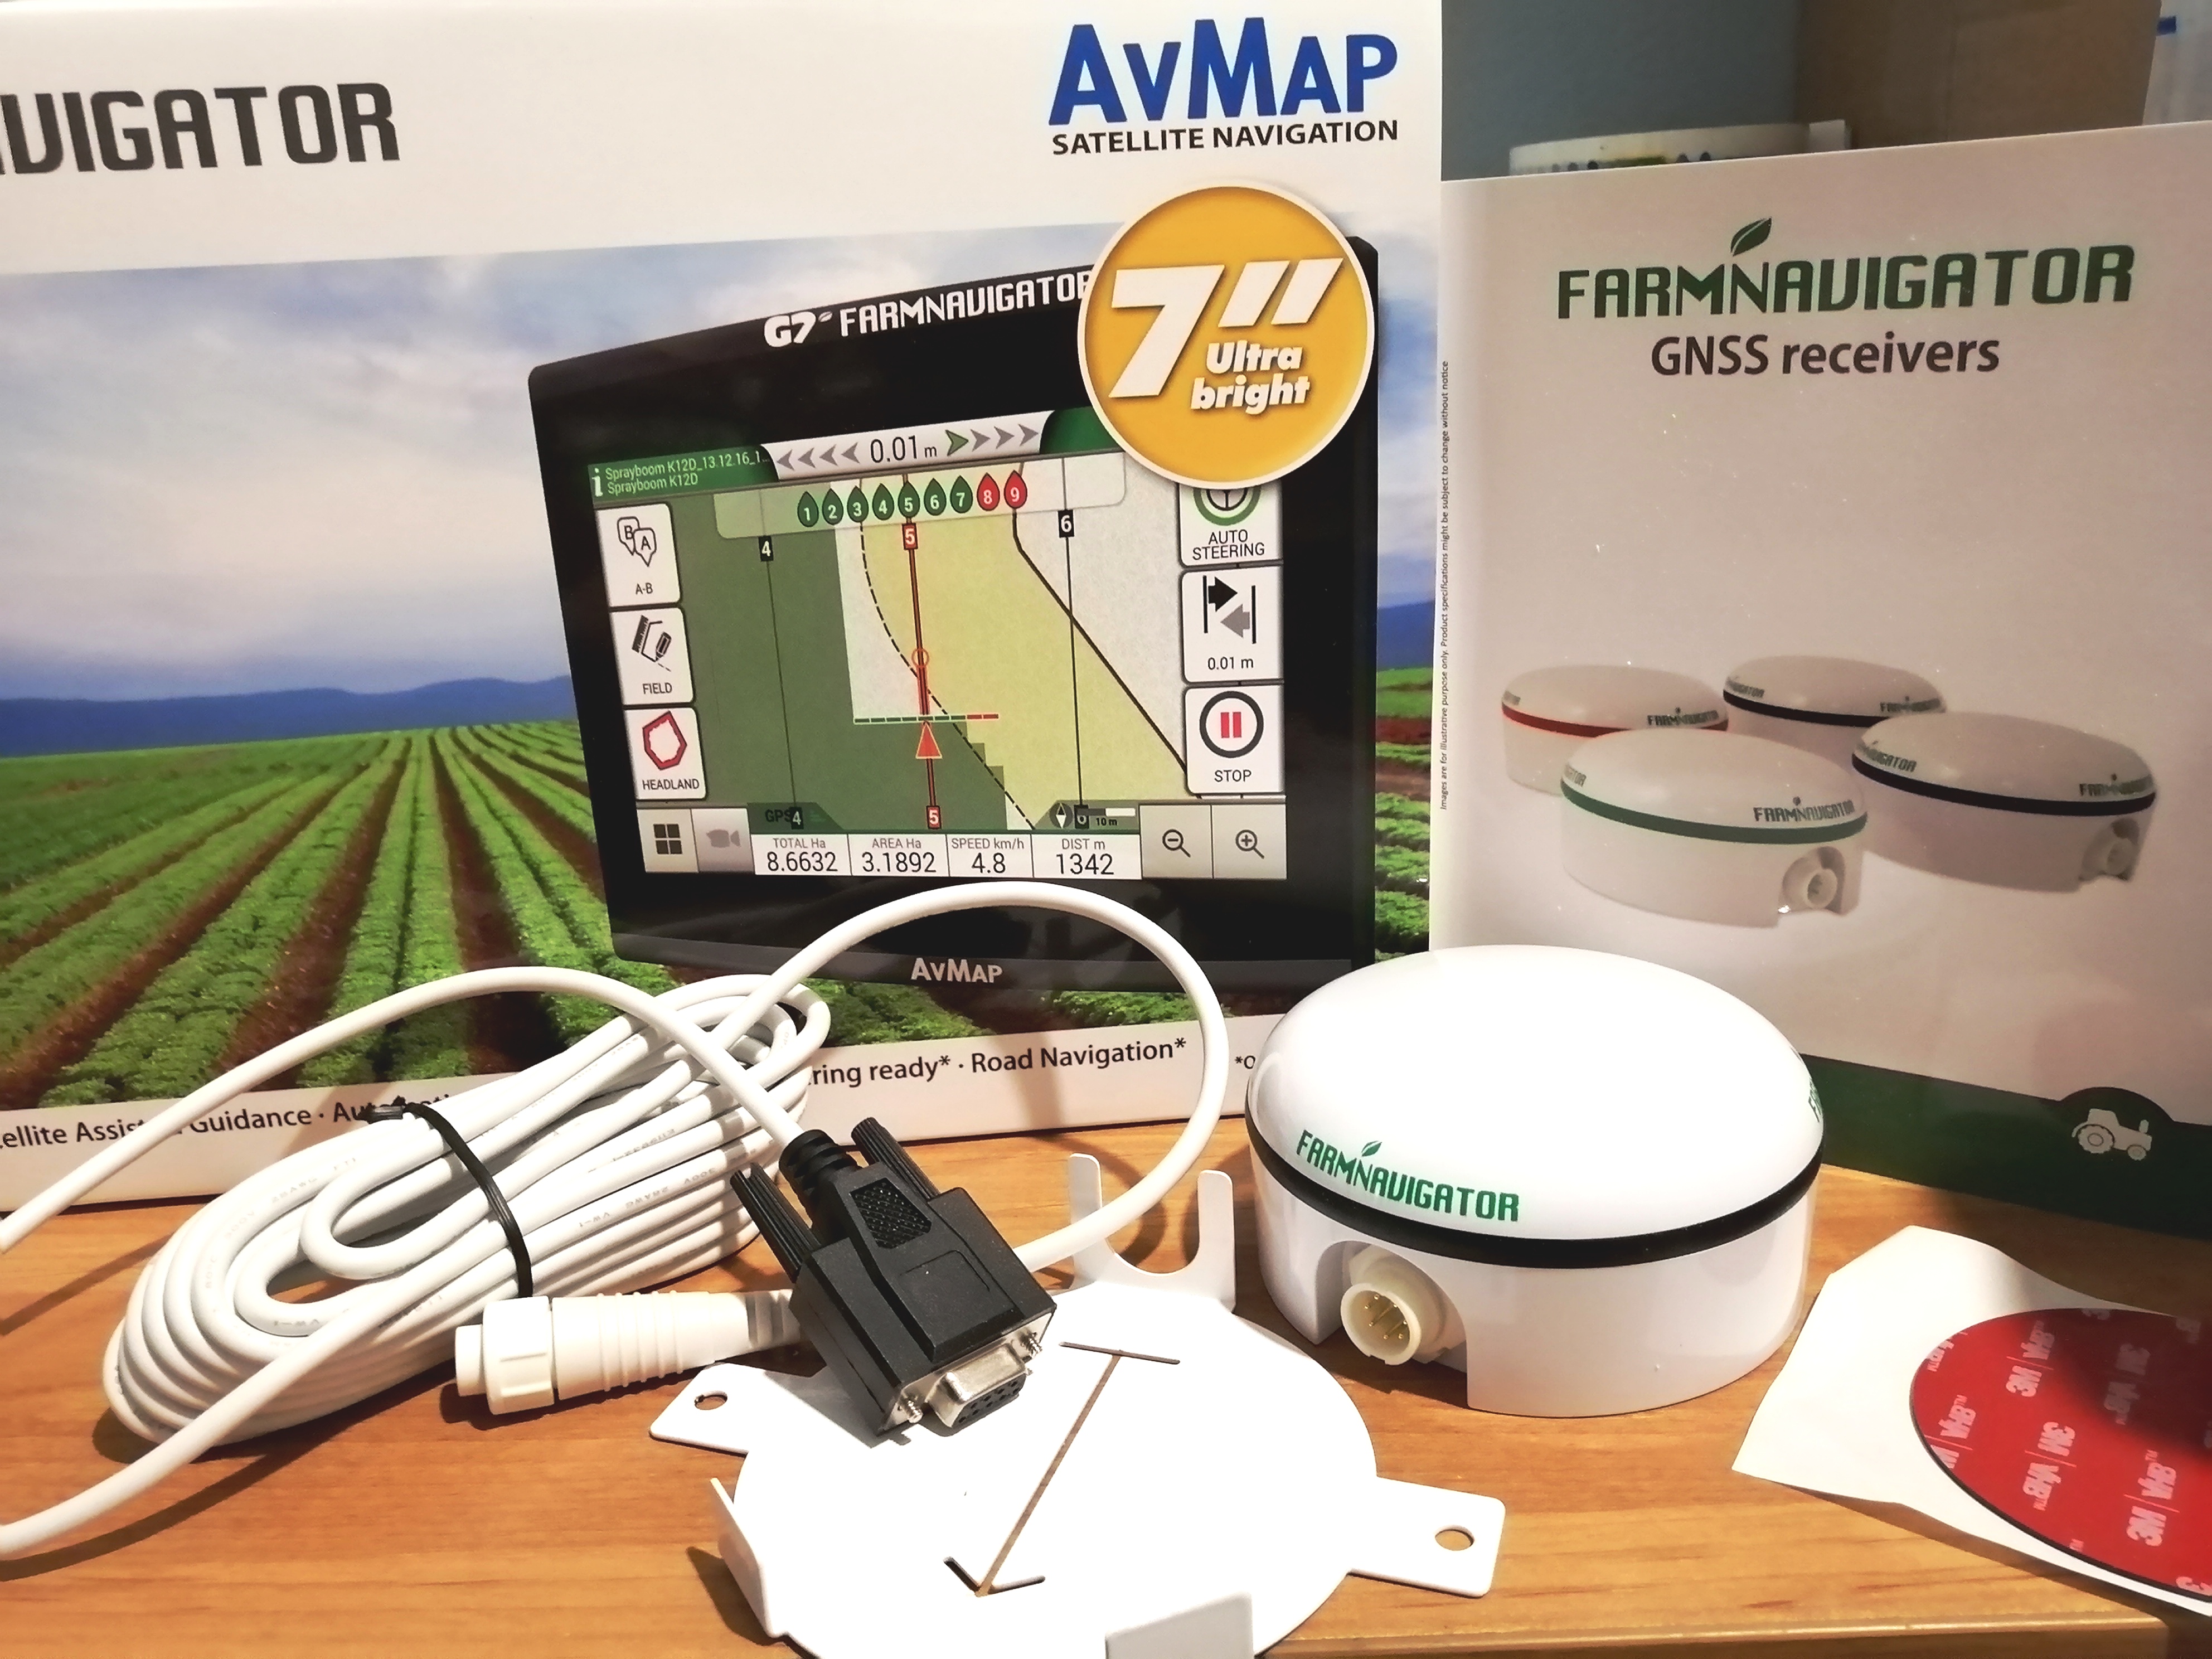 Агронавигатор AvMap G7 Farmnavigator для параллельного вождения